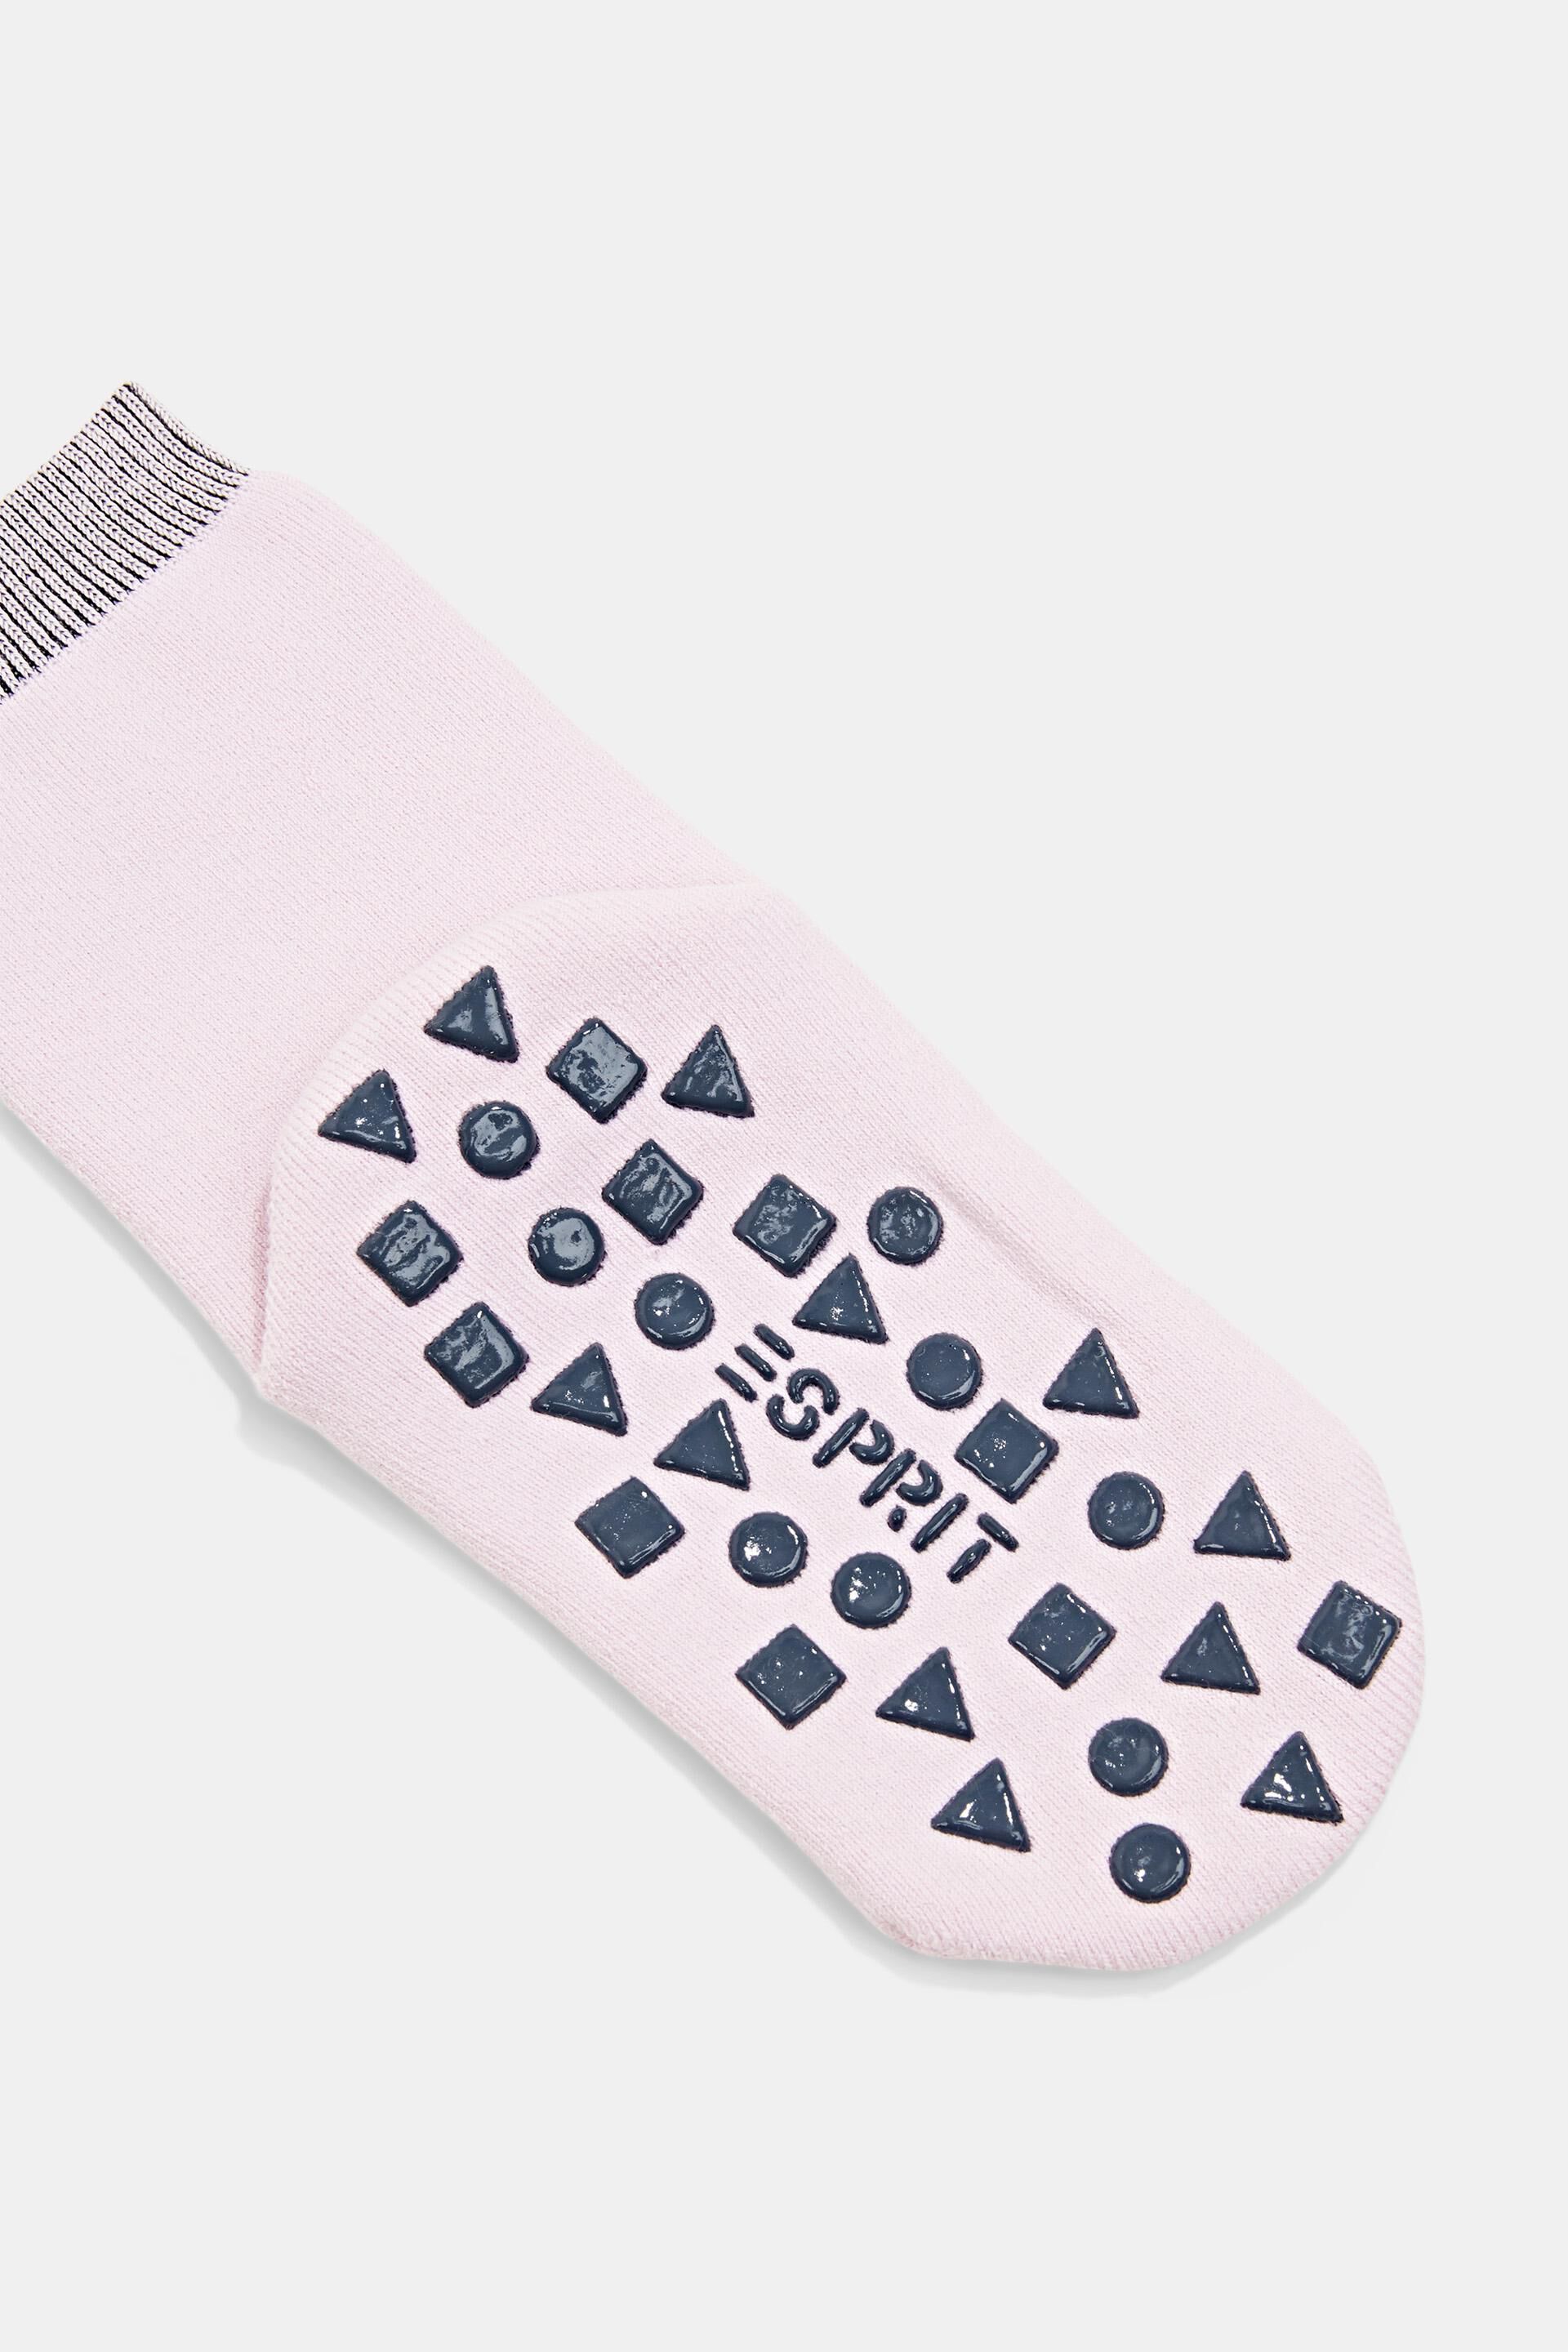 Esprit Bio-Baumwolle Rutschfeste gemischter Socken aus